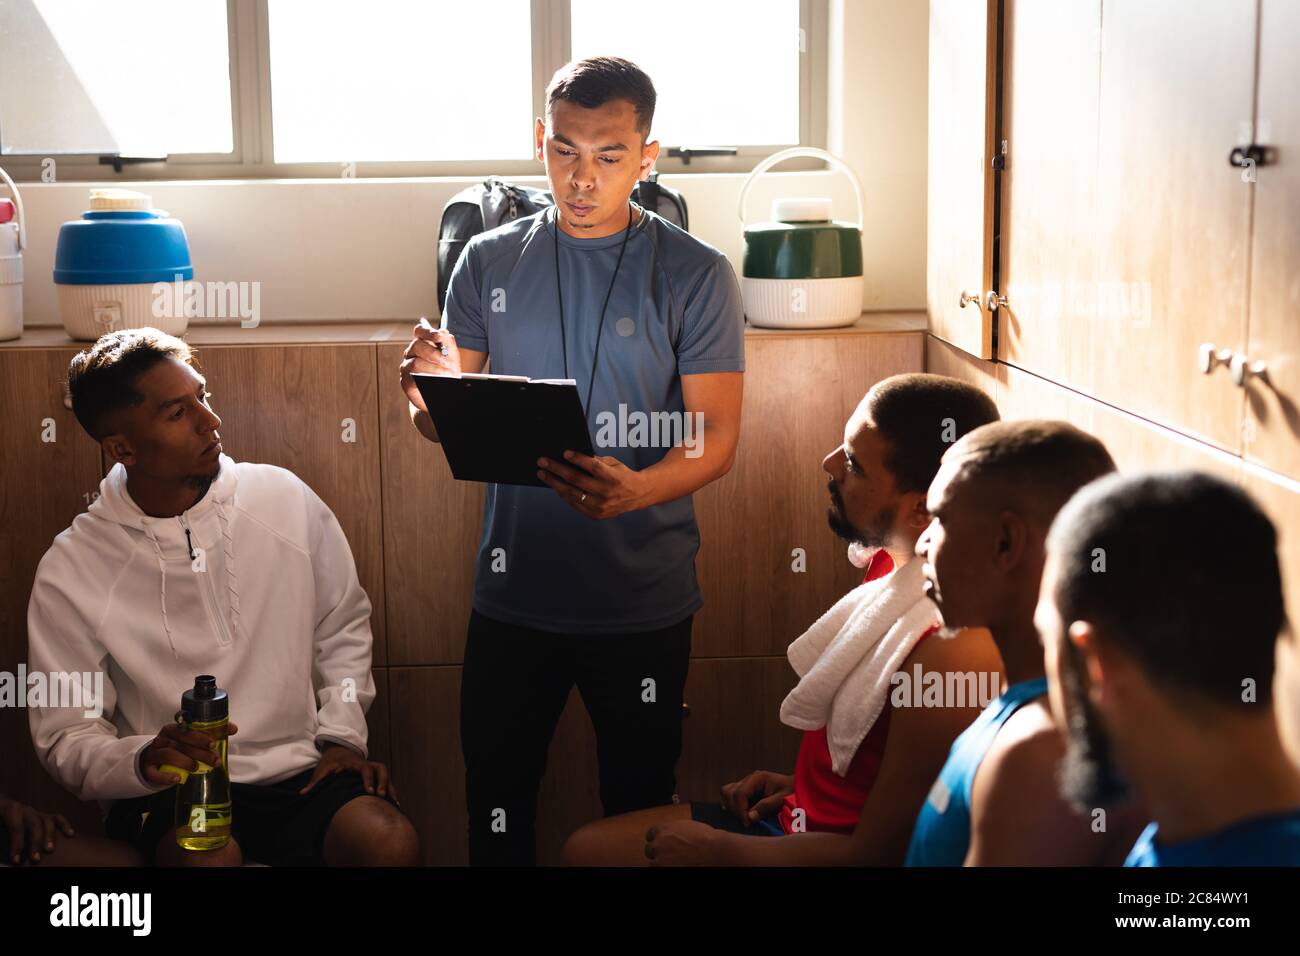 Groupe multiethnique de joueurs de football portant des vêtements de sport assis dans le vestiaire pendant une pause dans le jeu, à l'écoute de leur entraîneur instruisant ho Banque D'Images